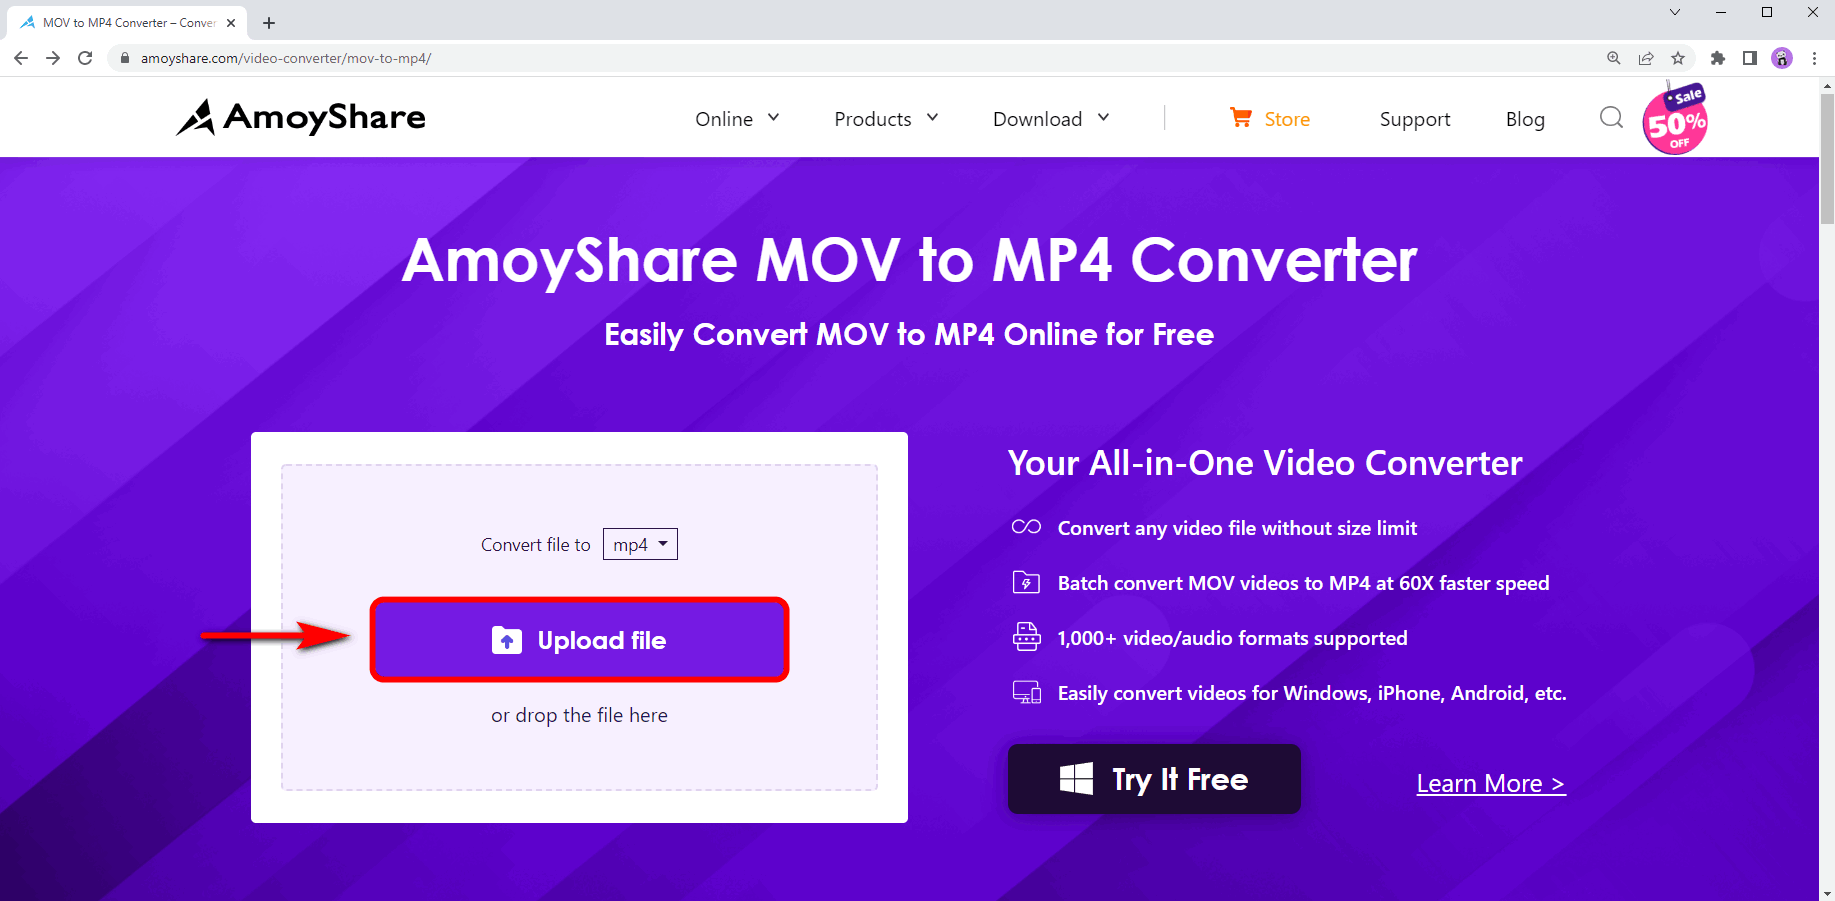 Laden Sie die MOV-Datei online hoch